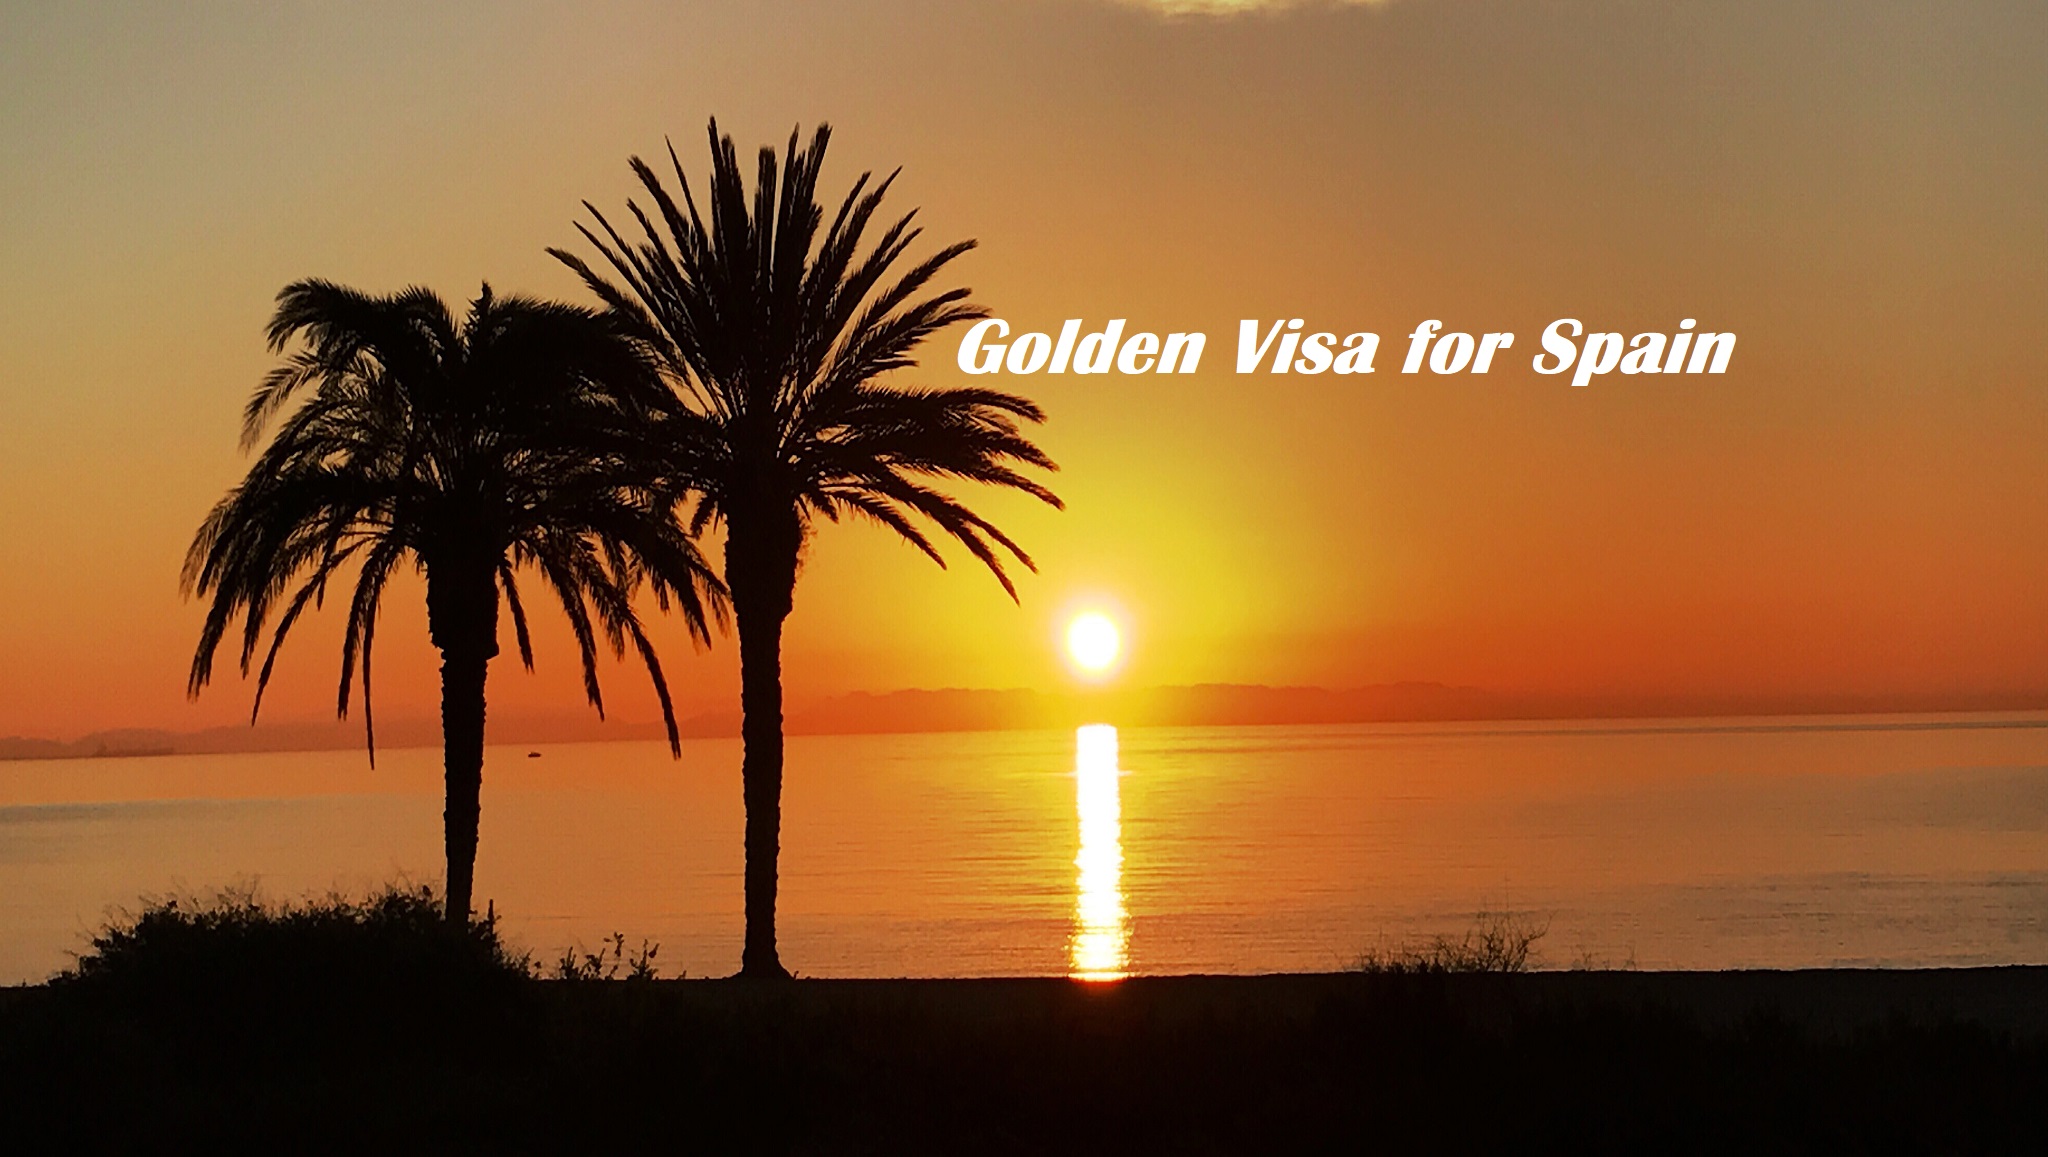 Golden visa for Spain